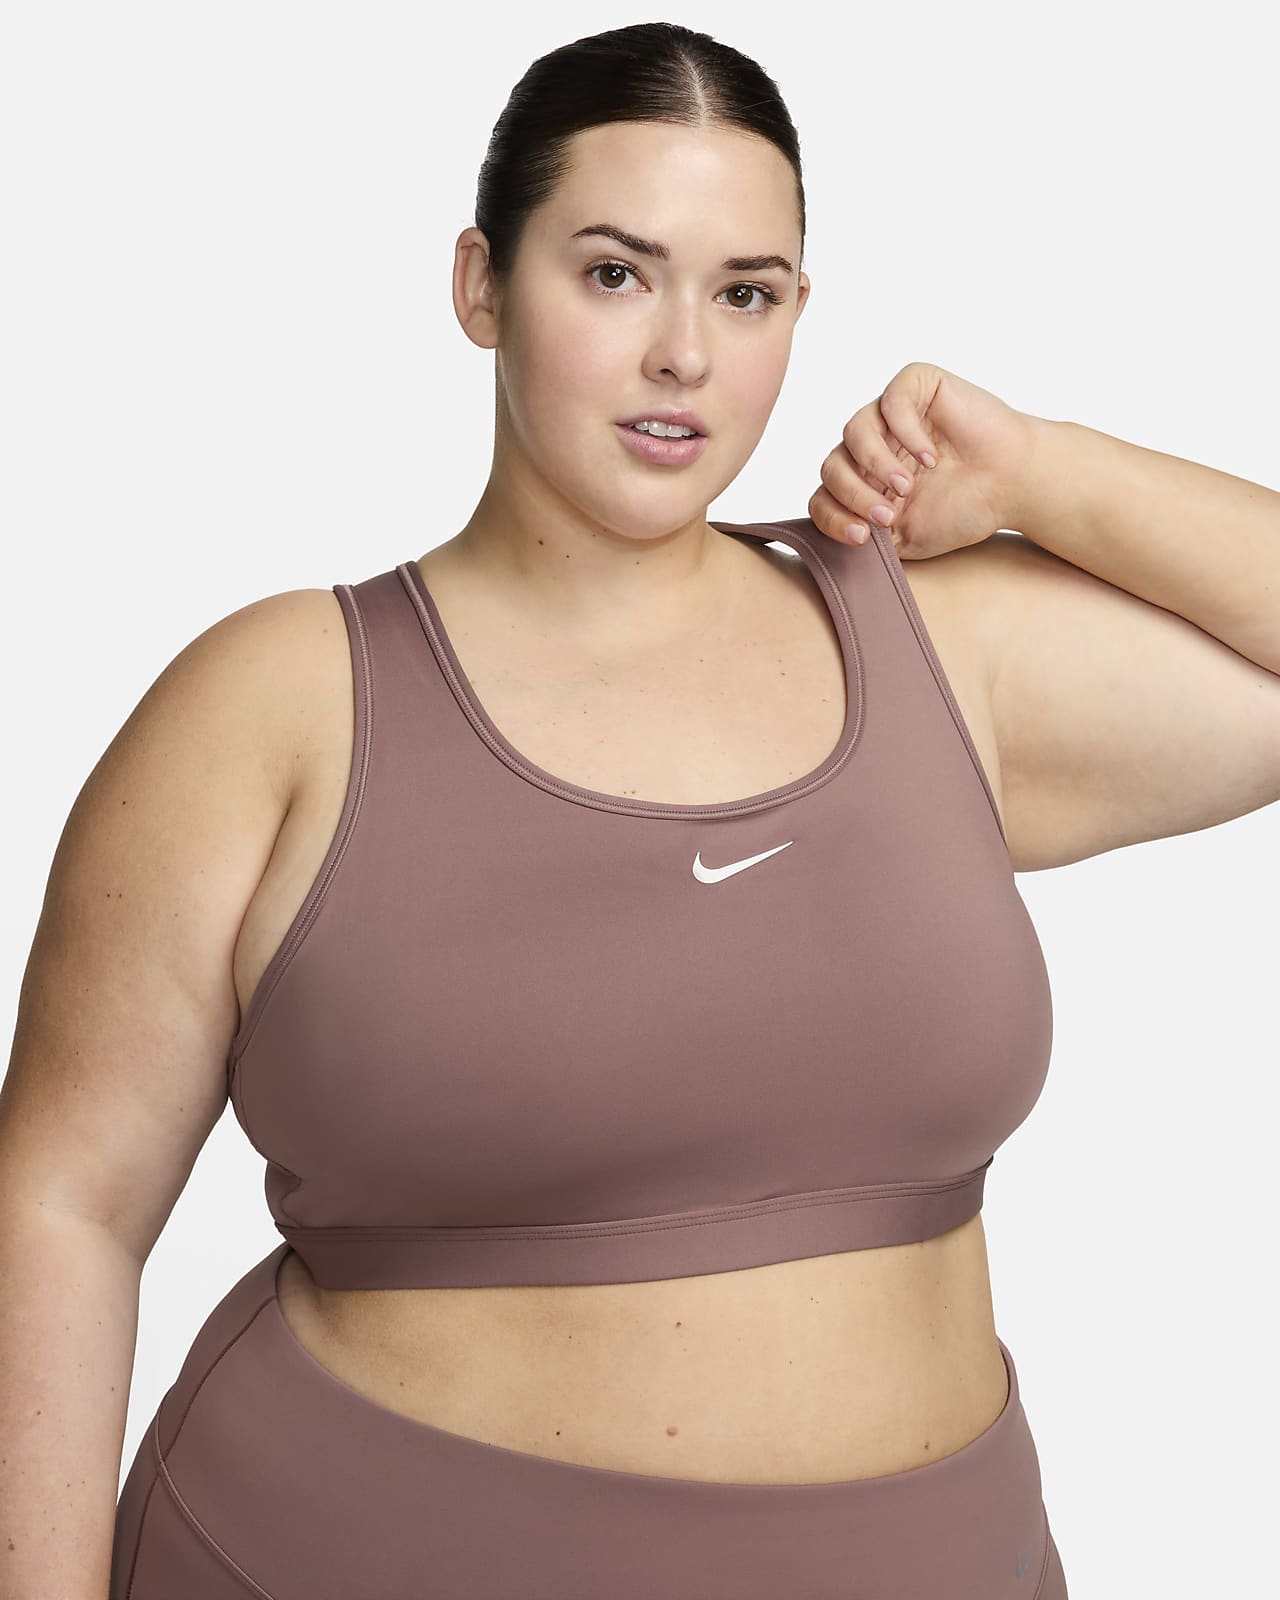 New Balance sport bra size XXL  Clothes design, Sports bra sizing, Sports  bra